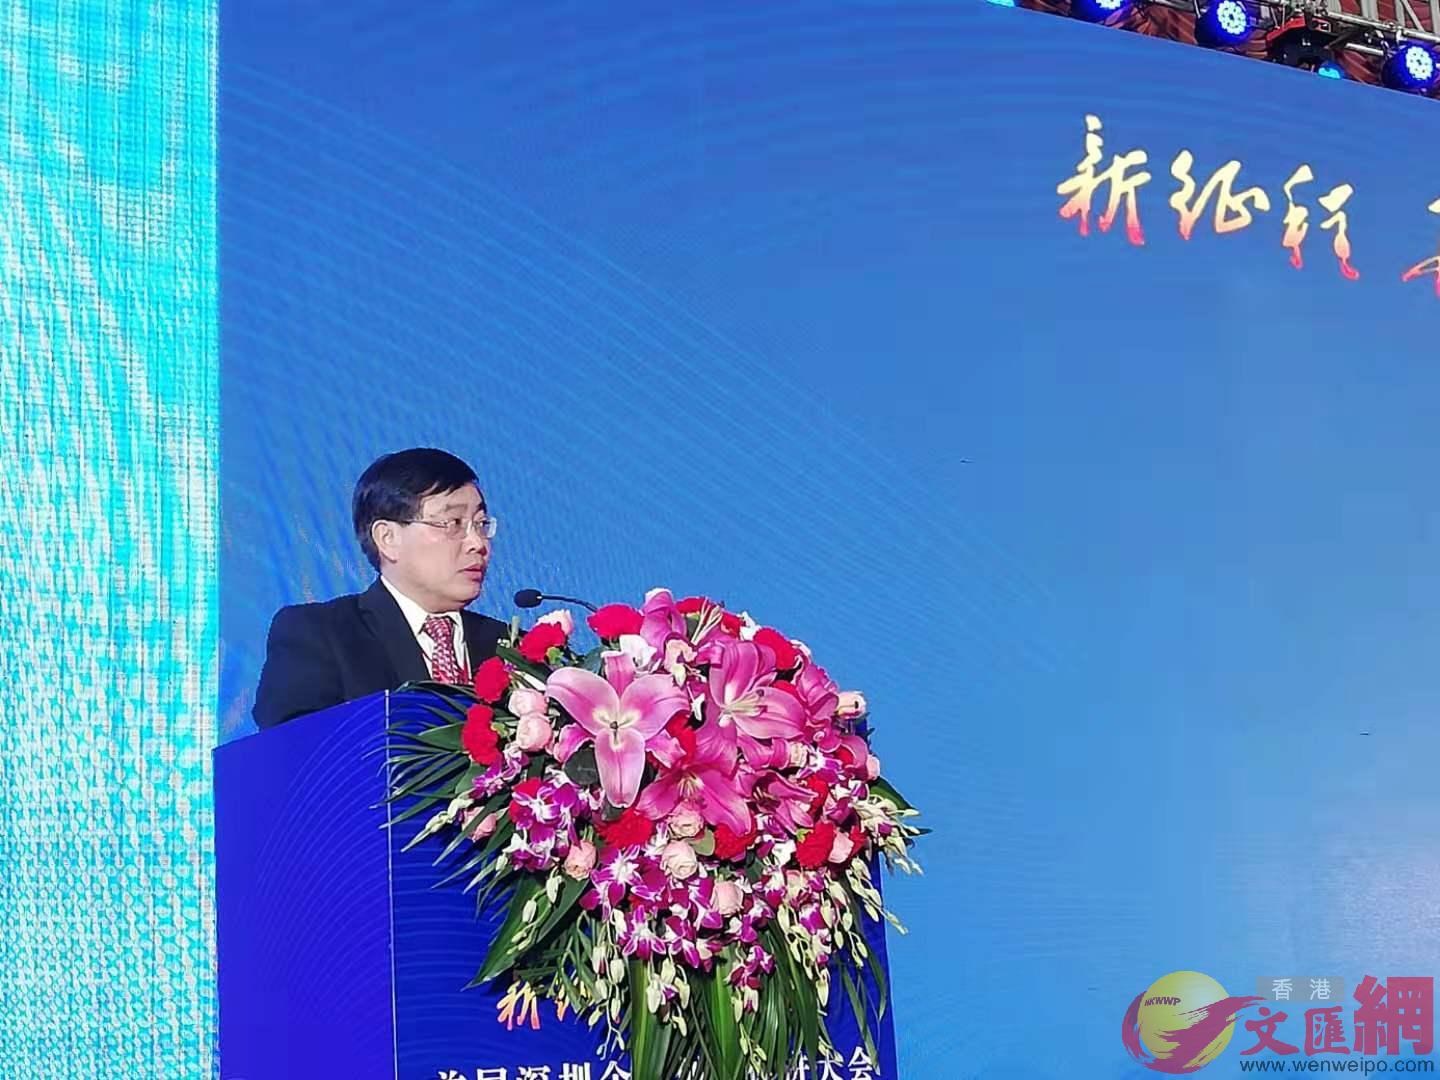 熊林表示A中國工業經濟聯合會圍繞新型智庫B產業協同B國際合作的戰略定位A將自身打造成國內外具有影響力的新型智庫]記者 李昌鴻 攝^